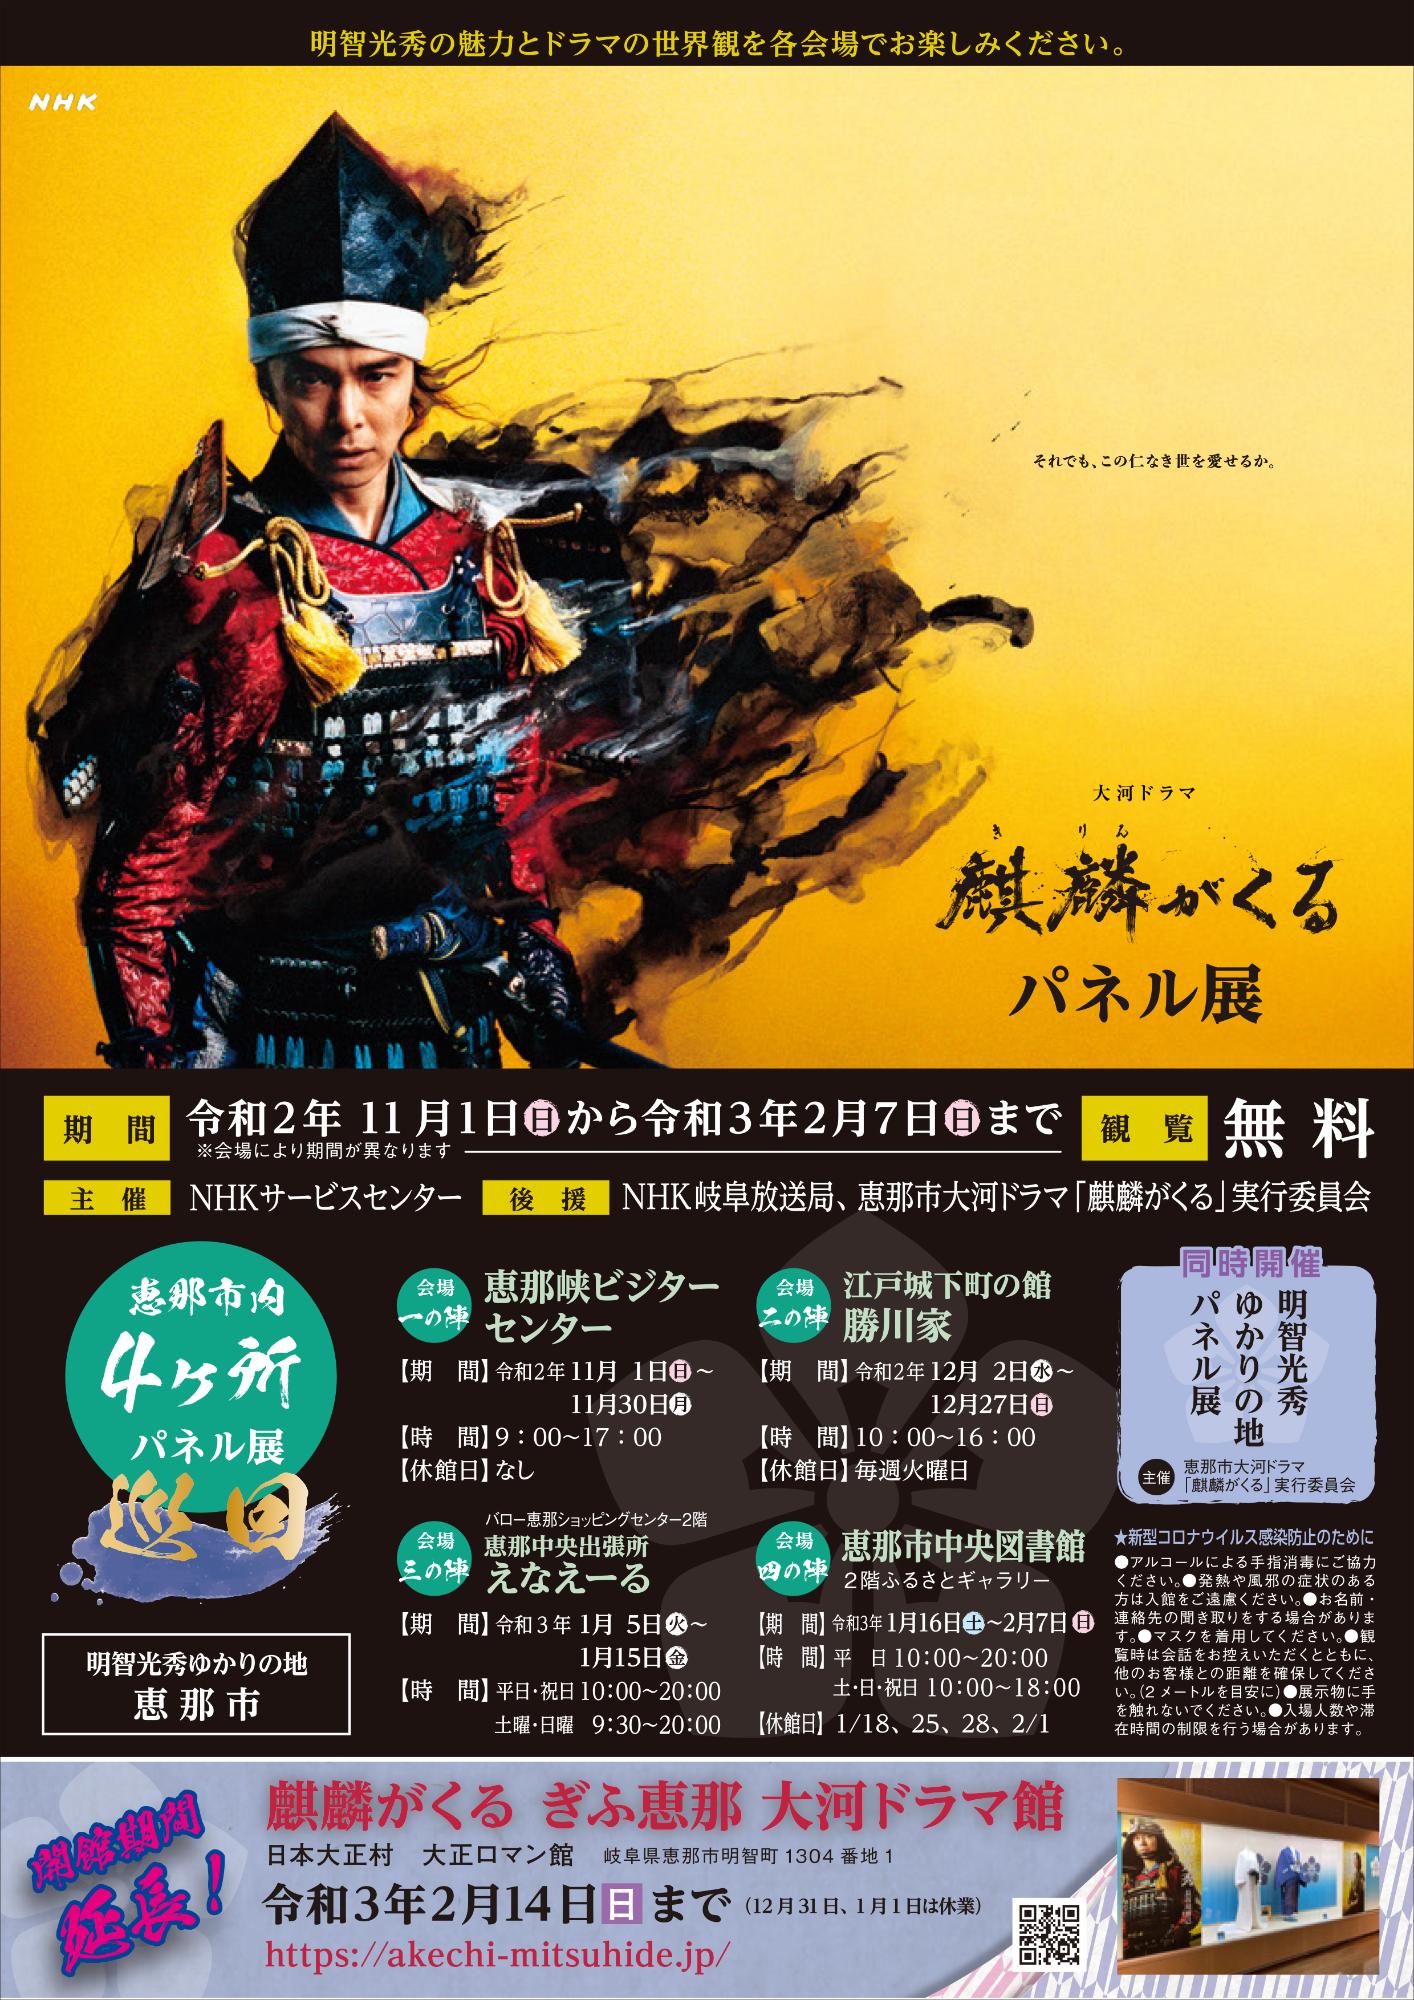 ふるさとギャラリー「NHK大河ドラマ「麒麟がくる」パネル展」のポスター